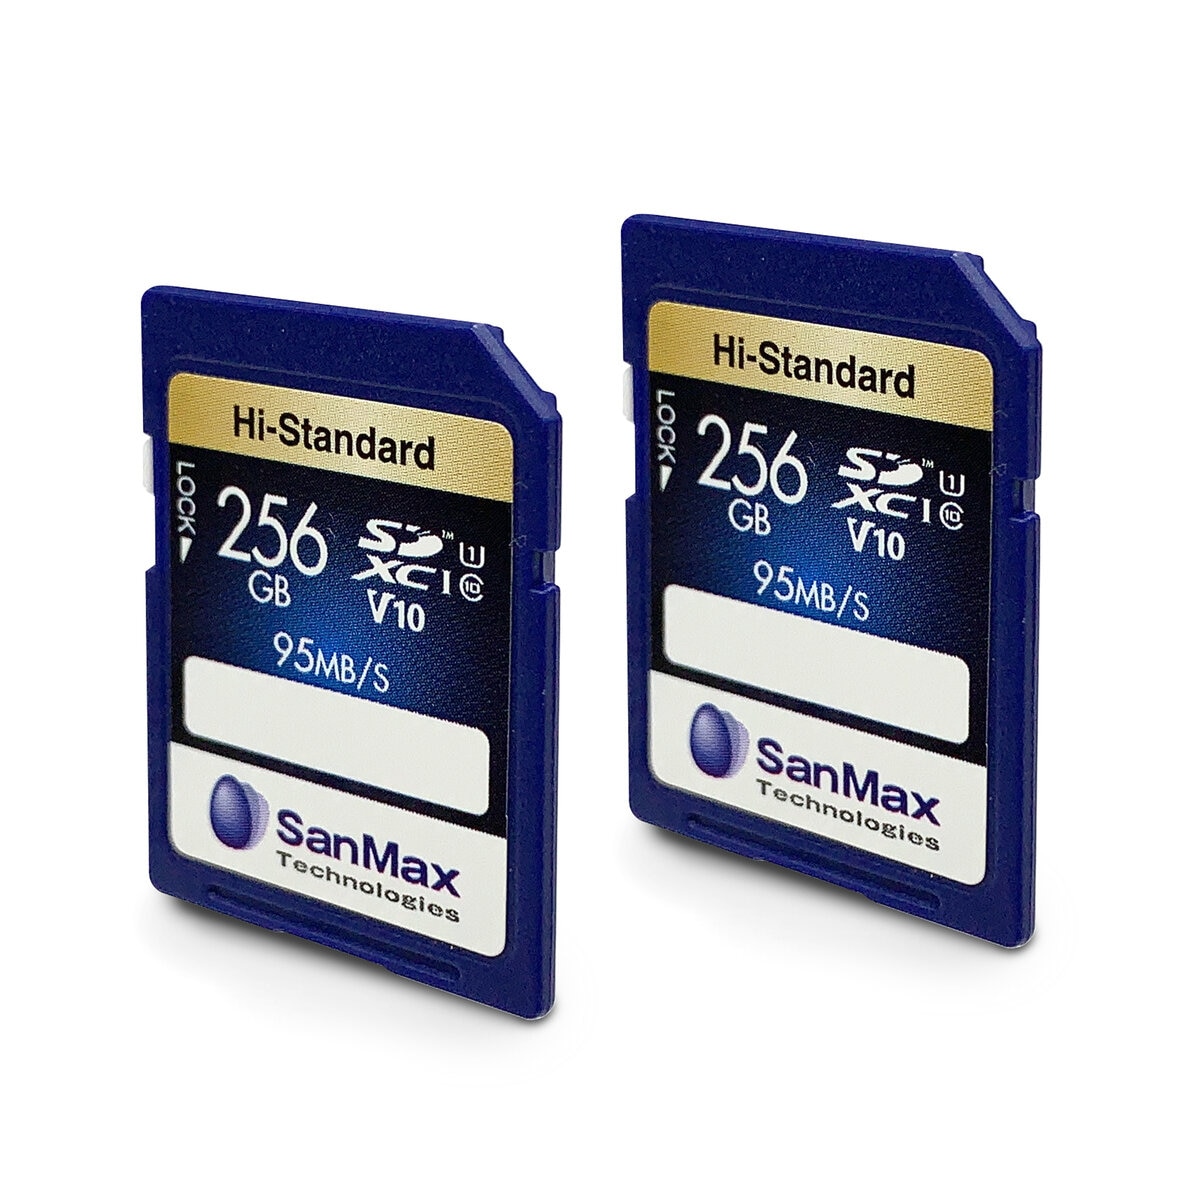 サンマックス SDXC カード 256GB V10 2個セット